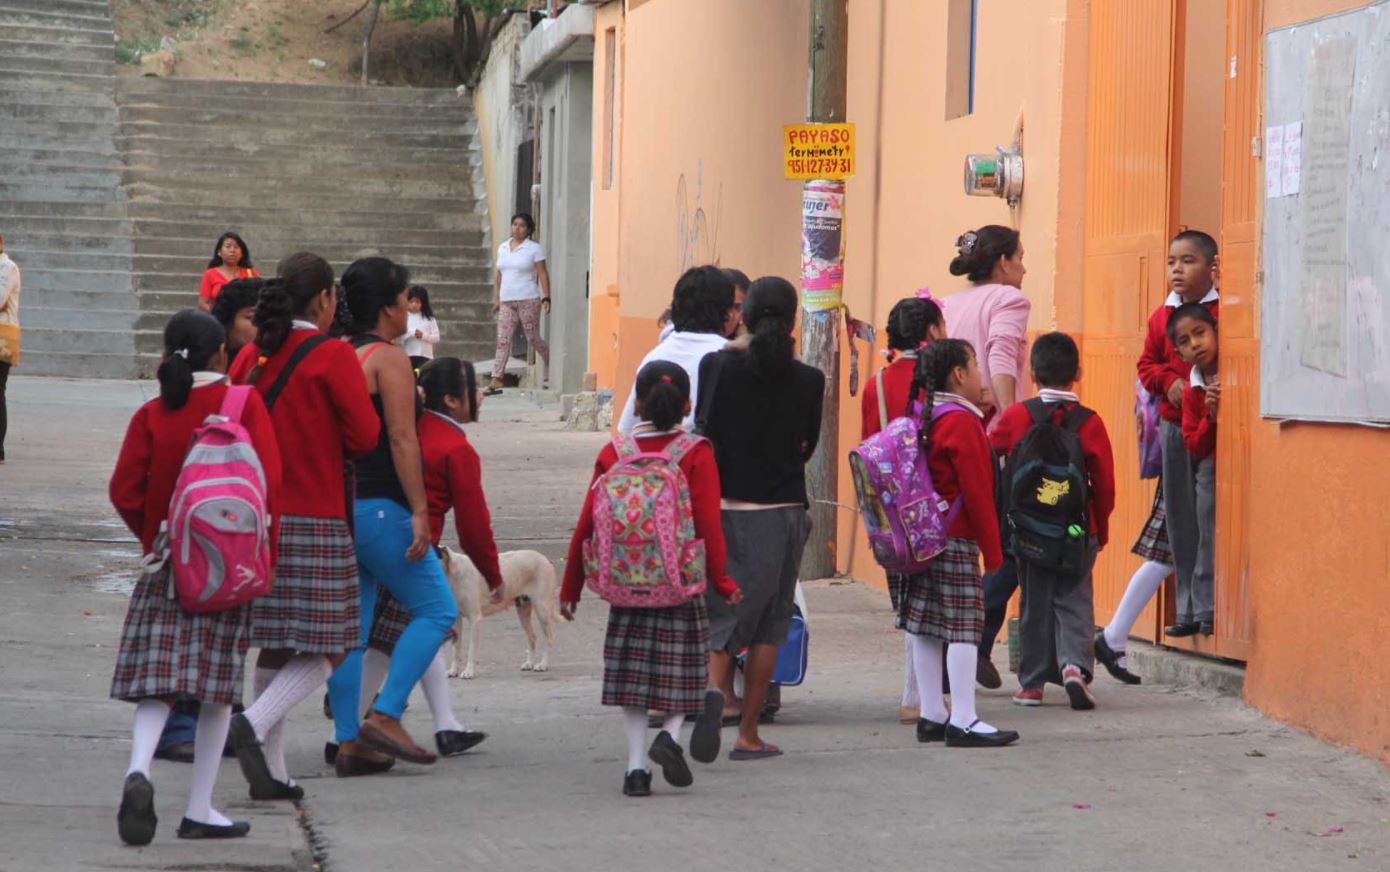 Reanudarán clases escuelas cerradas por afectaciones tras sismo en la CDMX